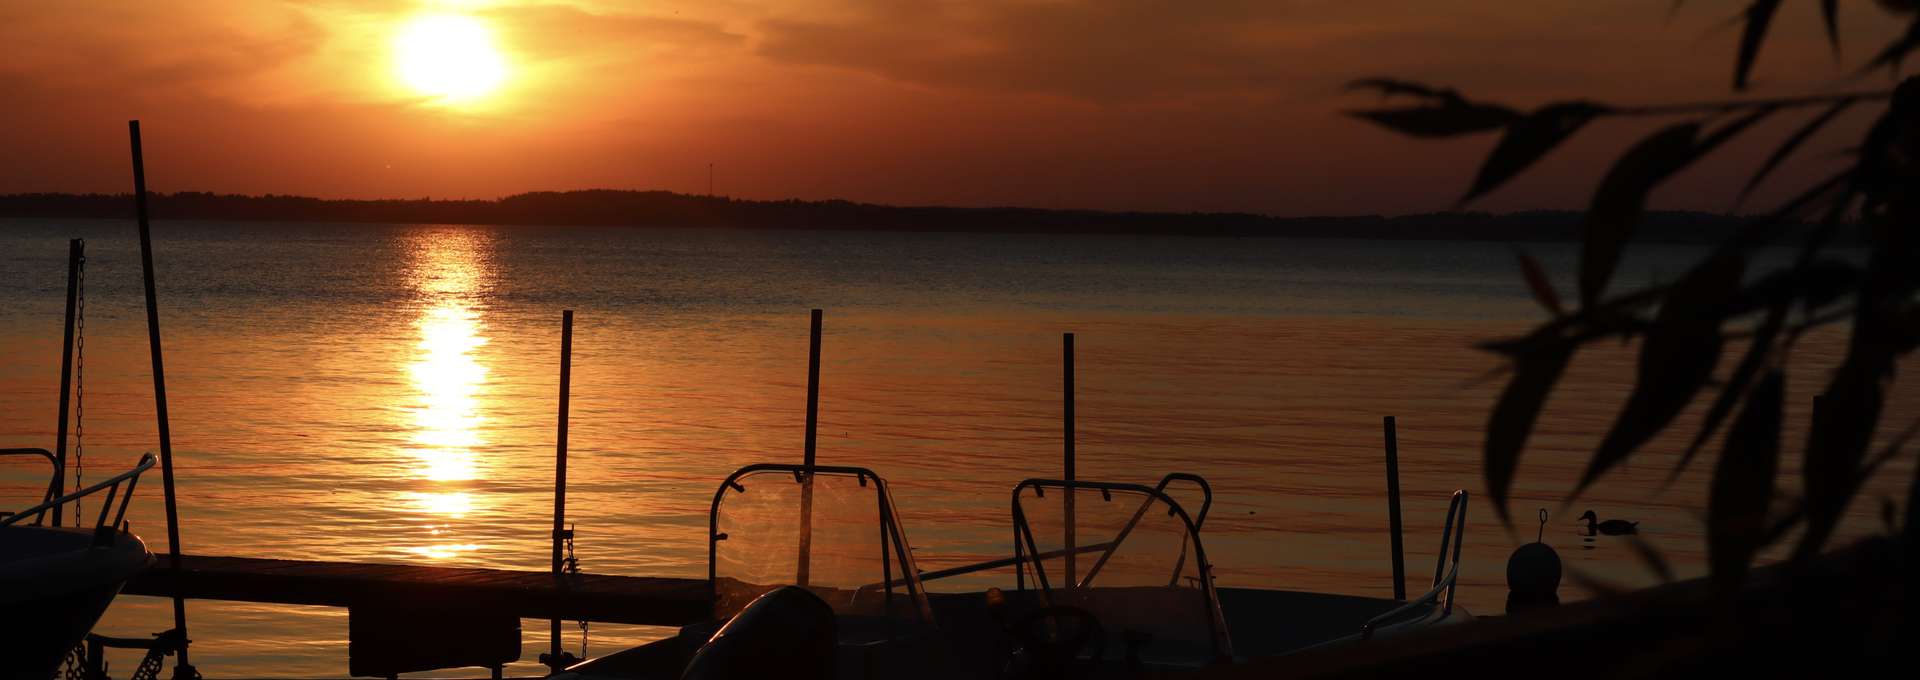 Båtbrygga vid sjö i vacker solnedgång